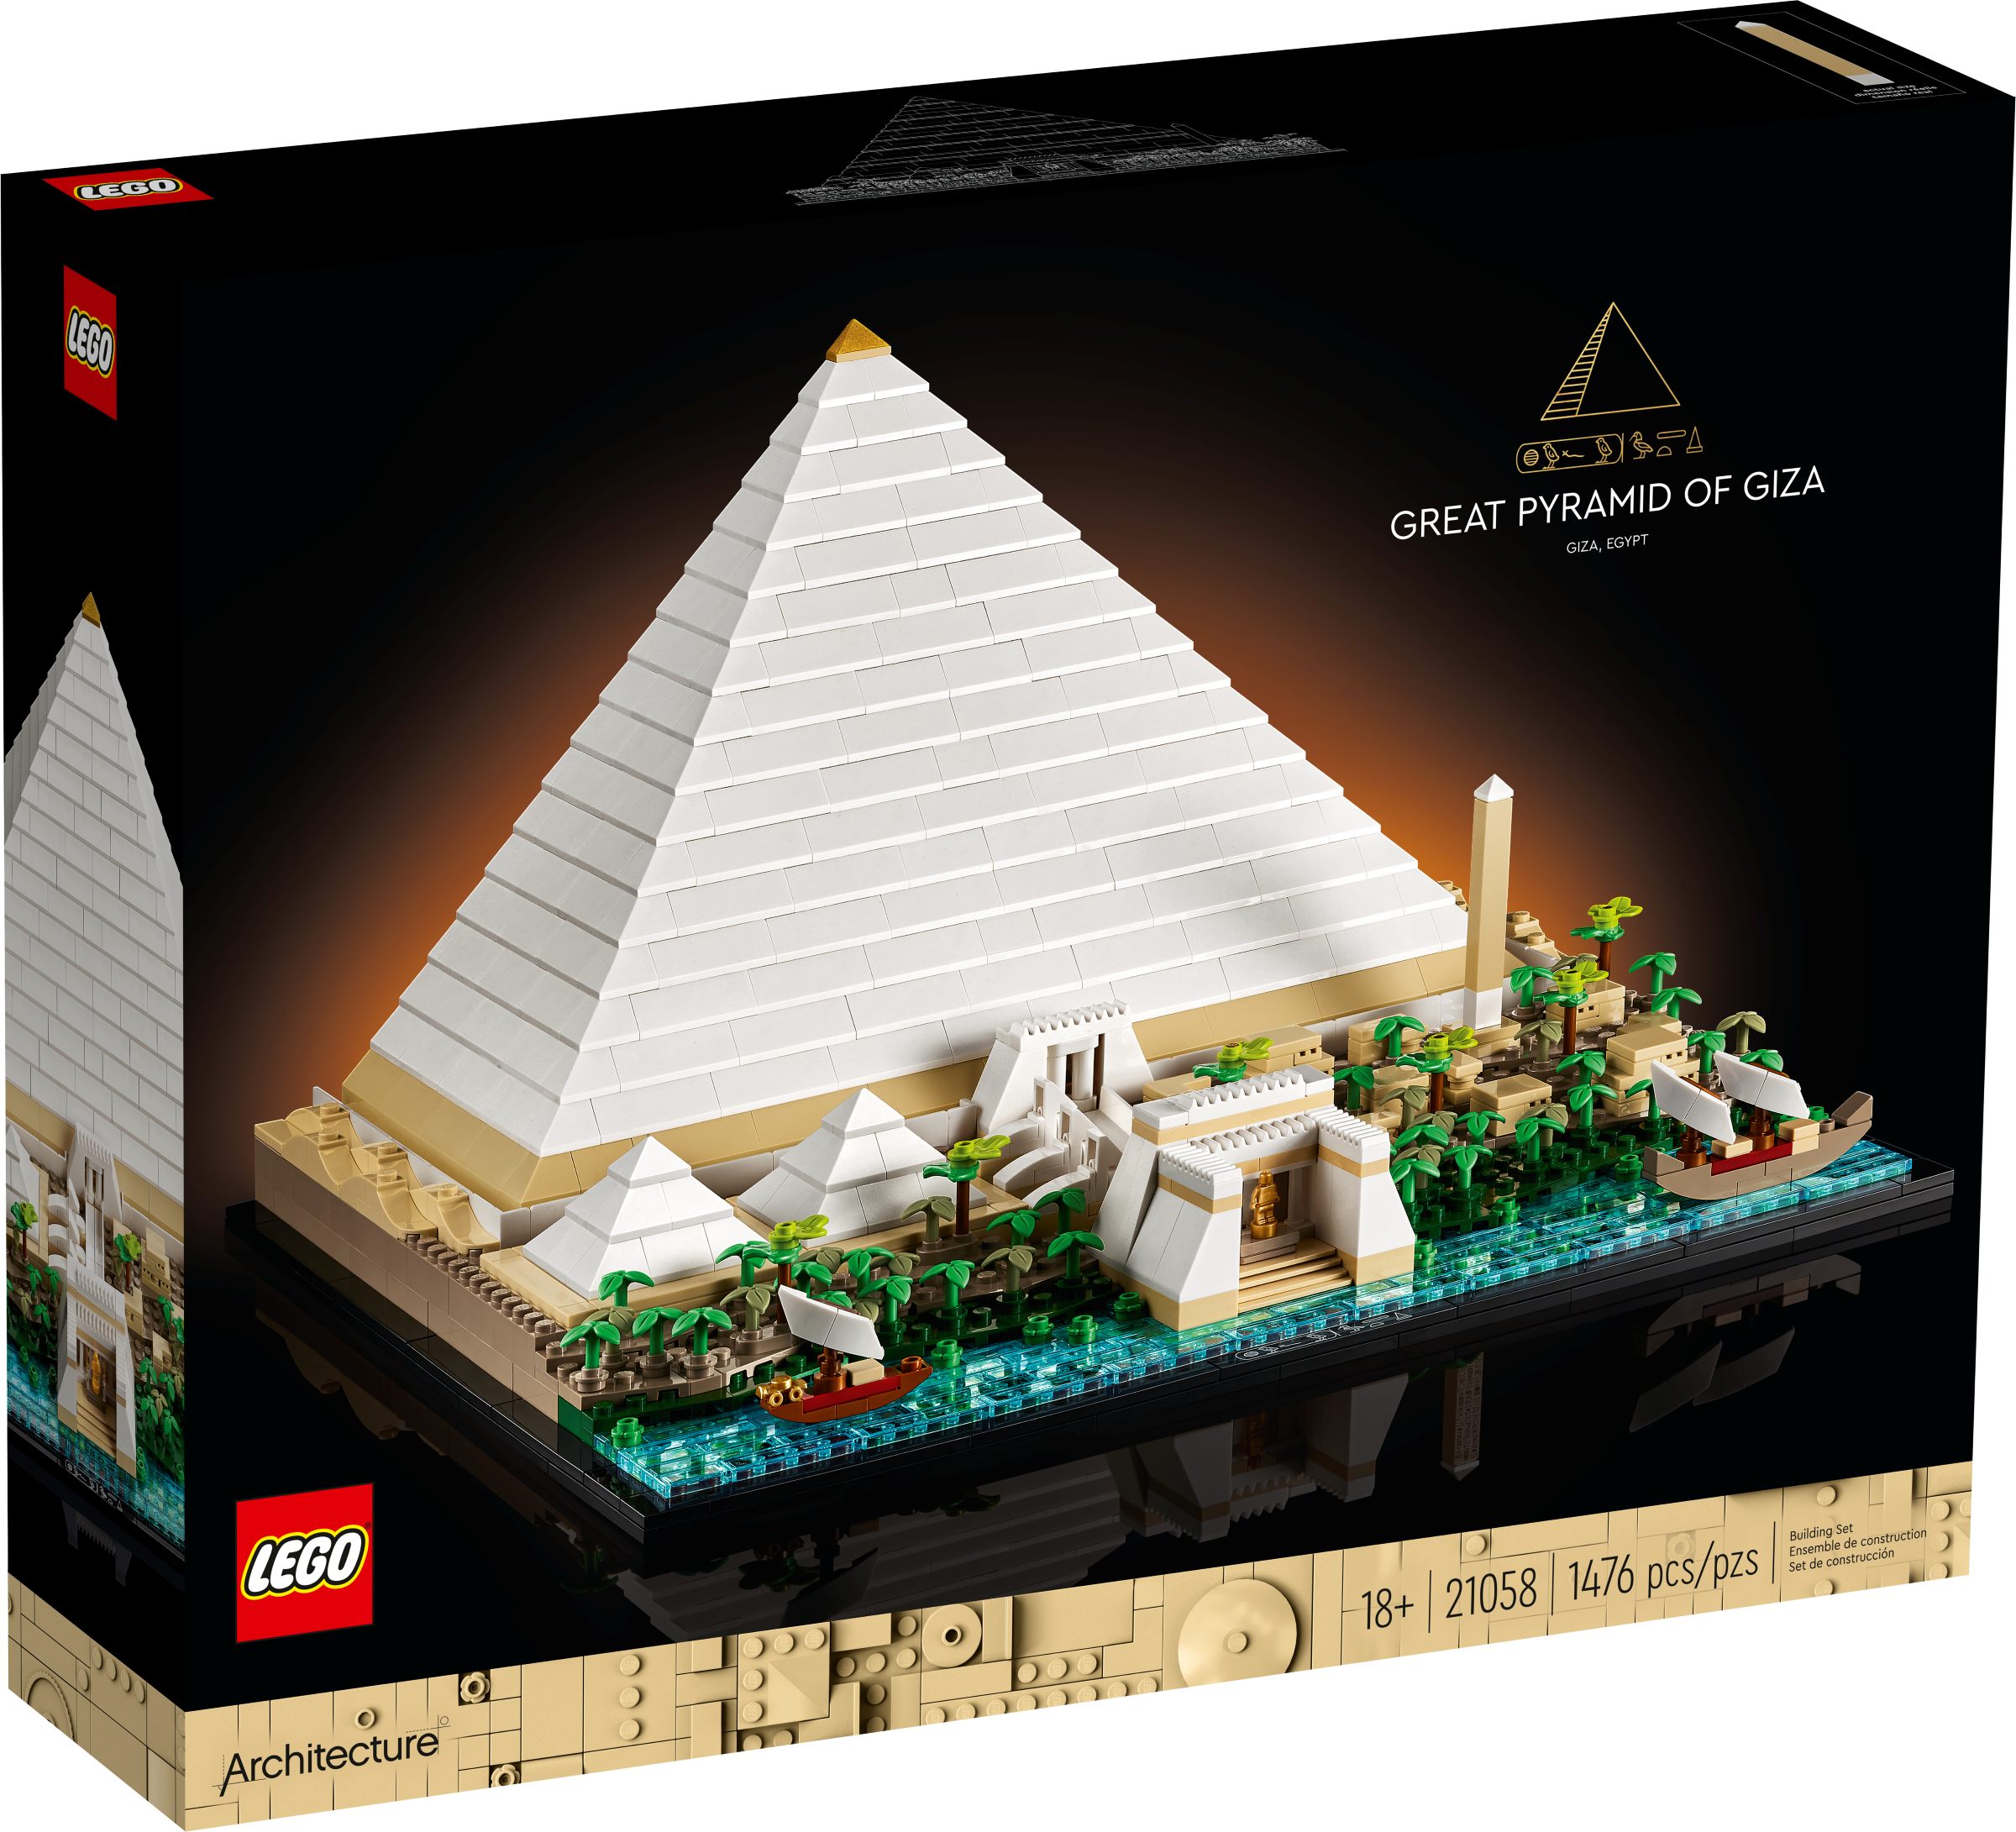 LEGO 21058 LA GRANDE PIRAMIDE DI GIZA ARCHITECTURE